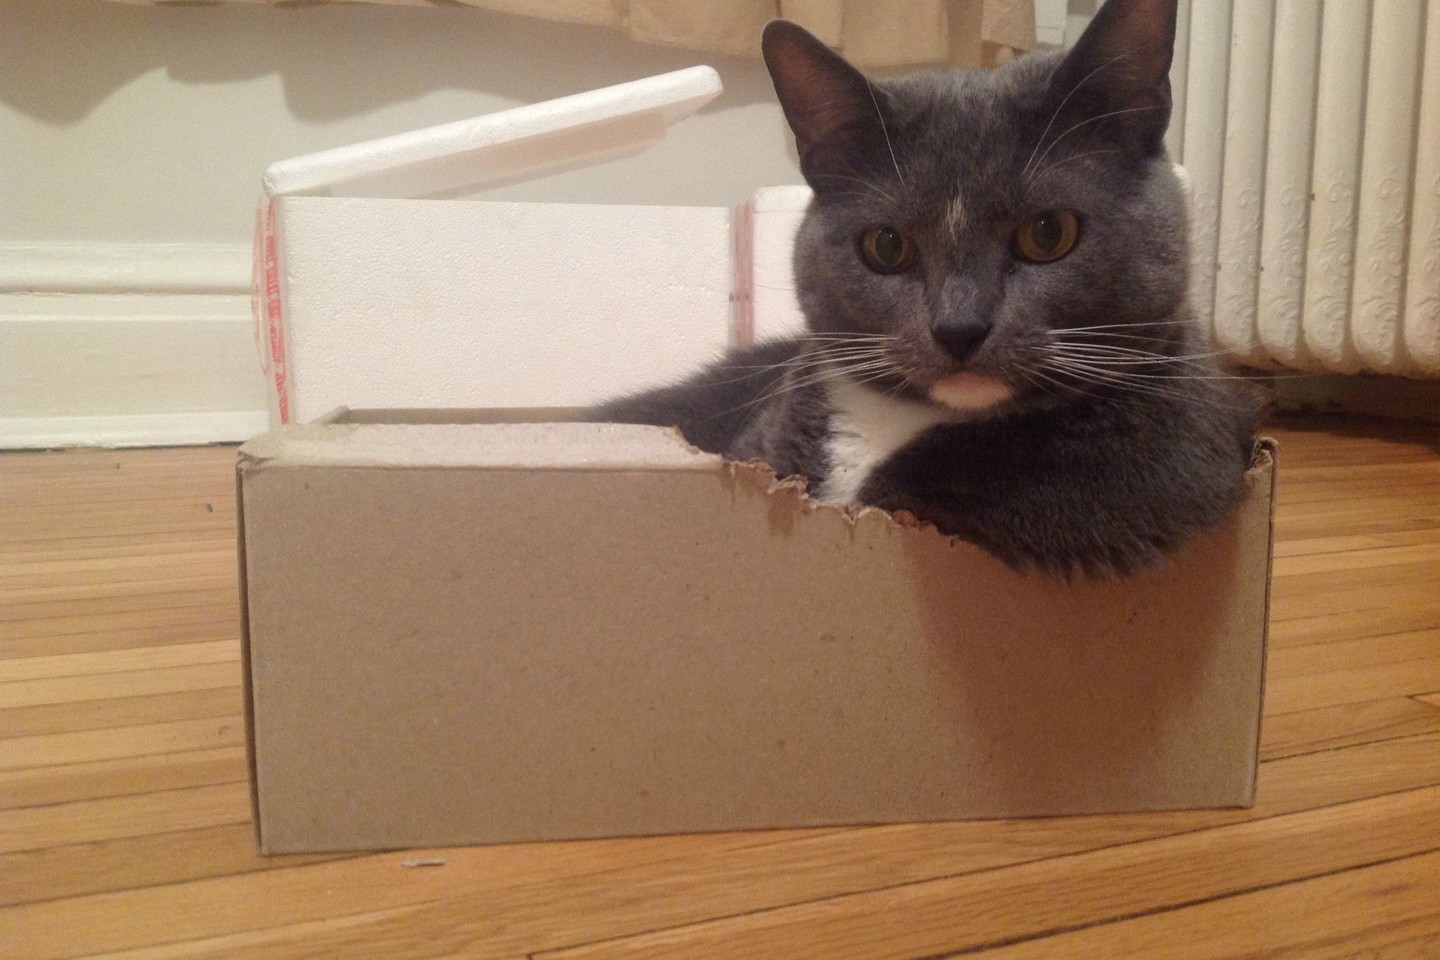  Šis katinas sau išsigraužė ranktūrį dėžėje. Nejuokaujame!<br> Soc. tinklų nuotr. 